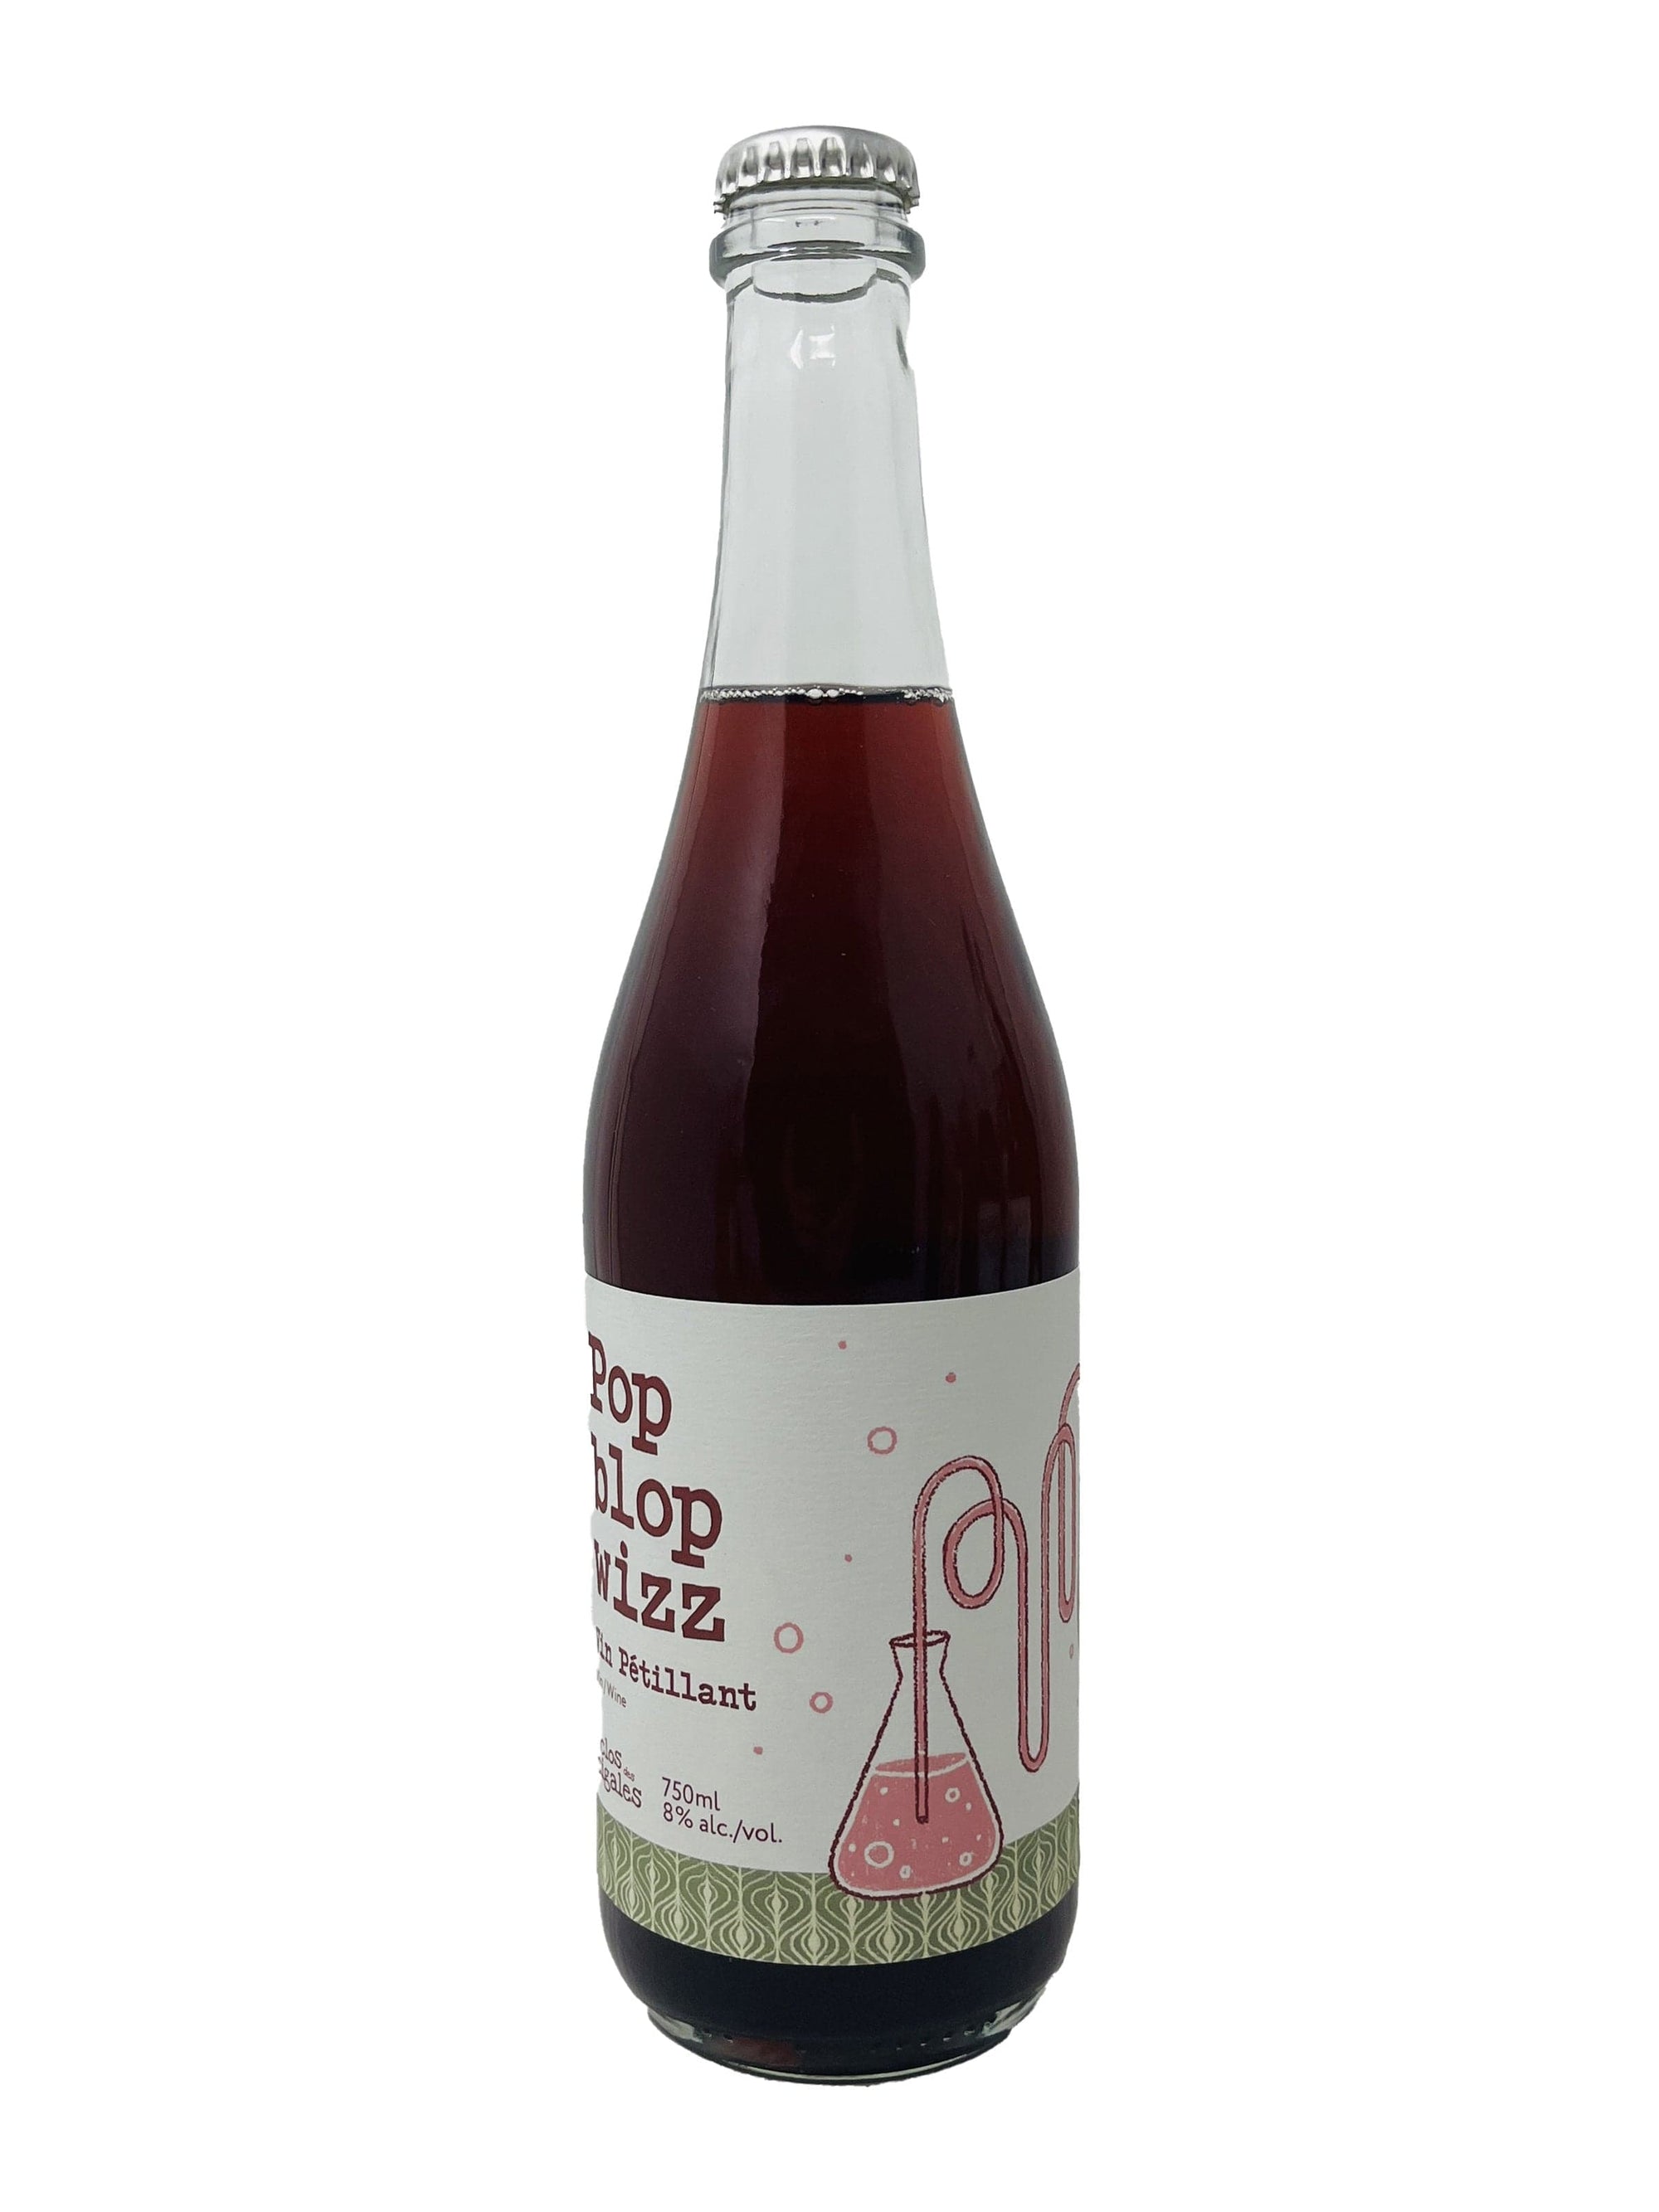 Vignoble Clos Des Cigales vin Pop Blop Wizz 2022- Vin rouge pétillant nature du Clos des Cigales